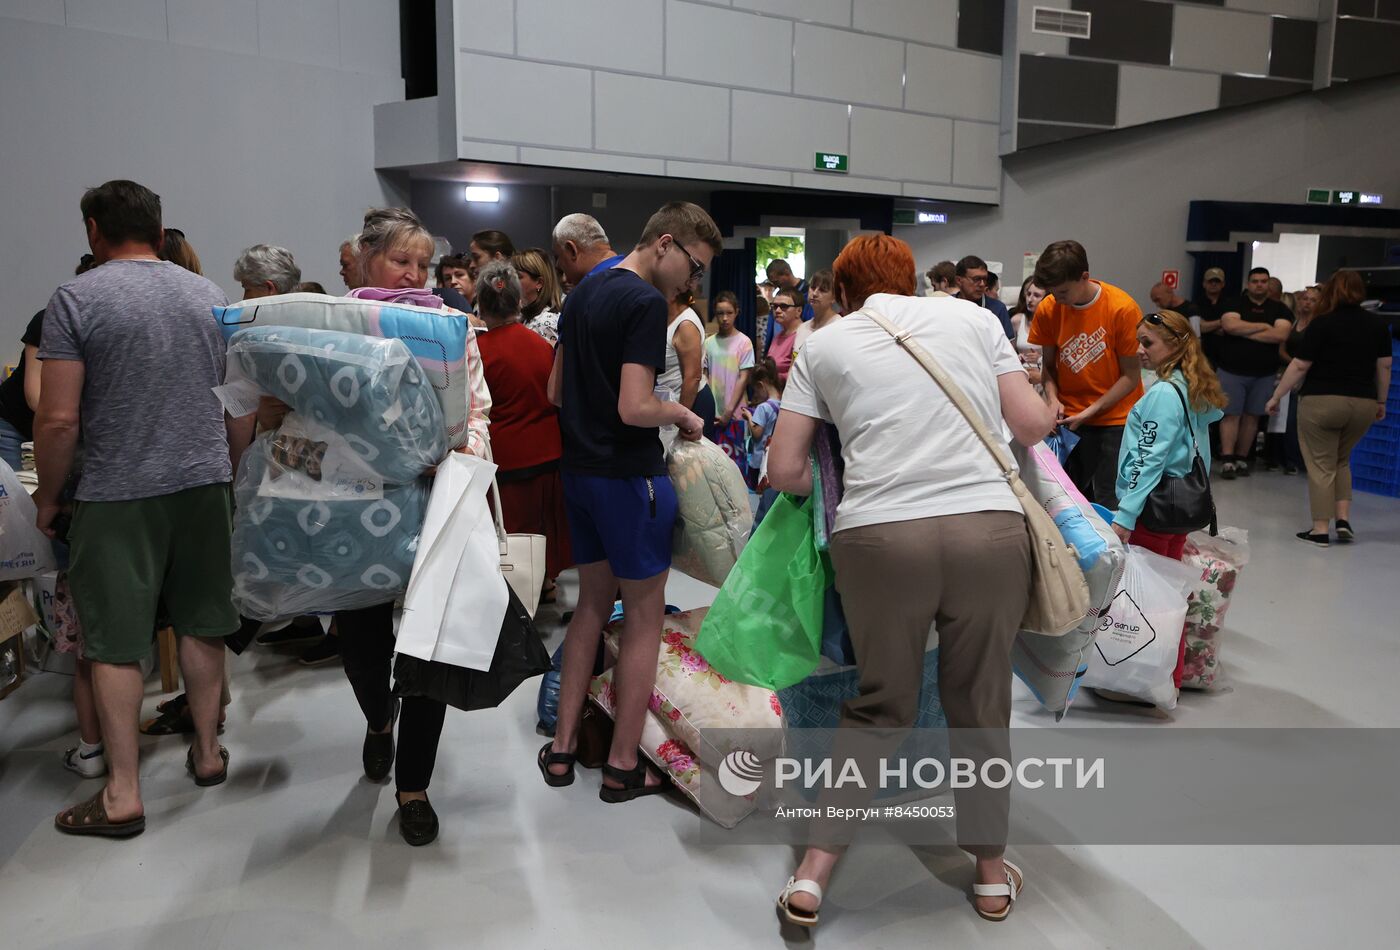 Пункты выдачи гумпомощи жителям Шебекино в Белгороде